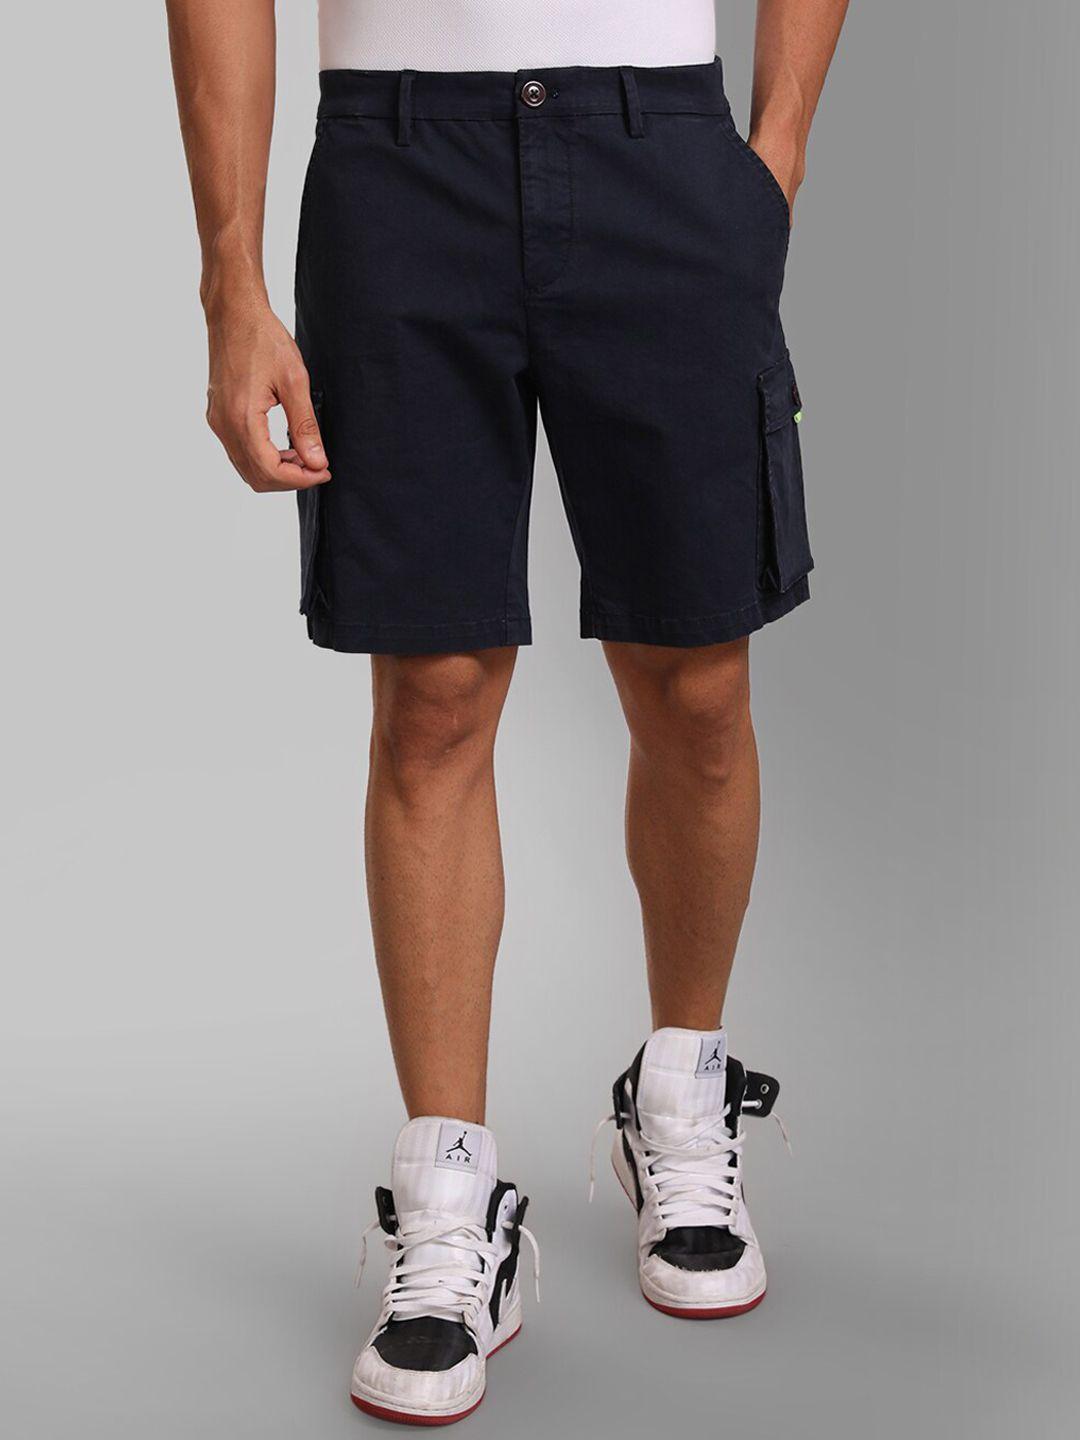 kz07 by kazo men blue high-rise shorts